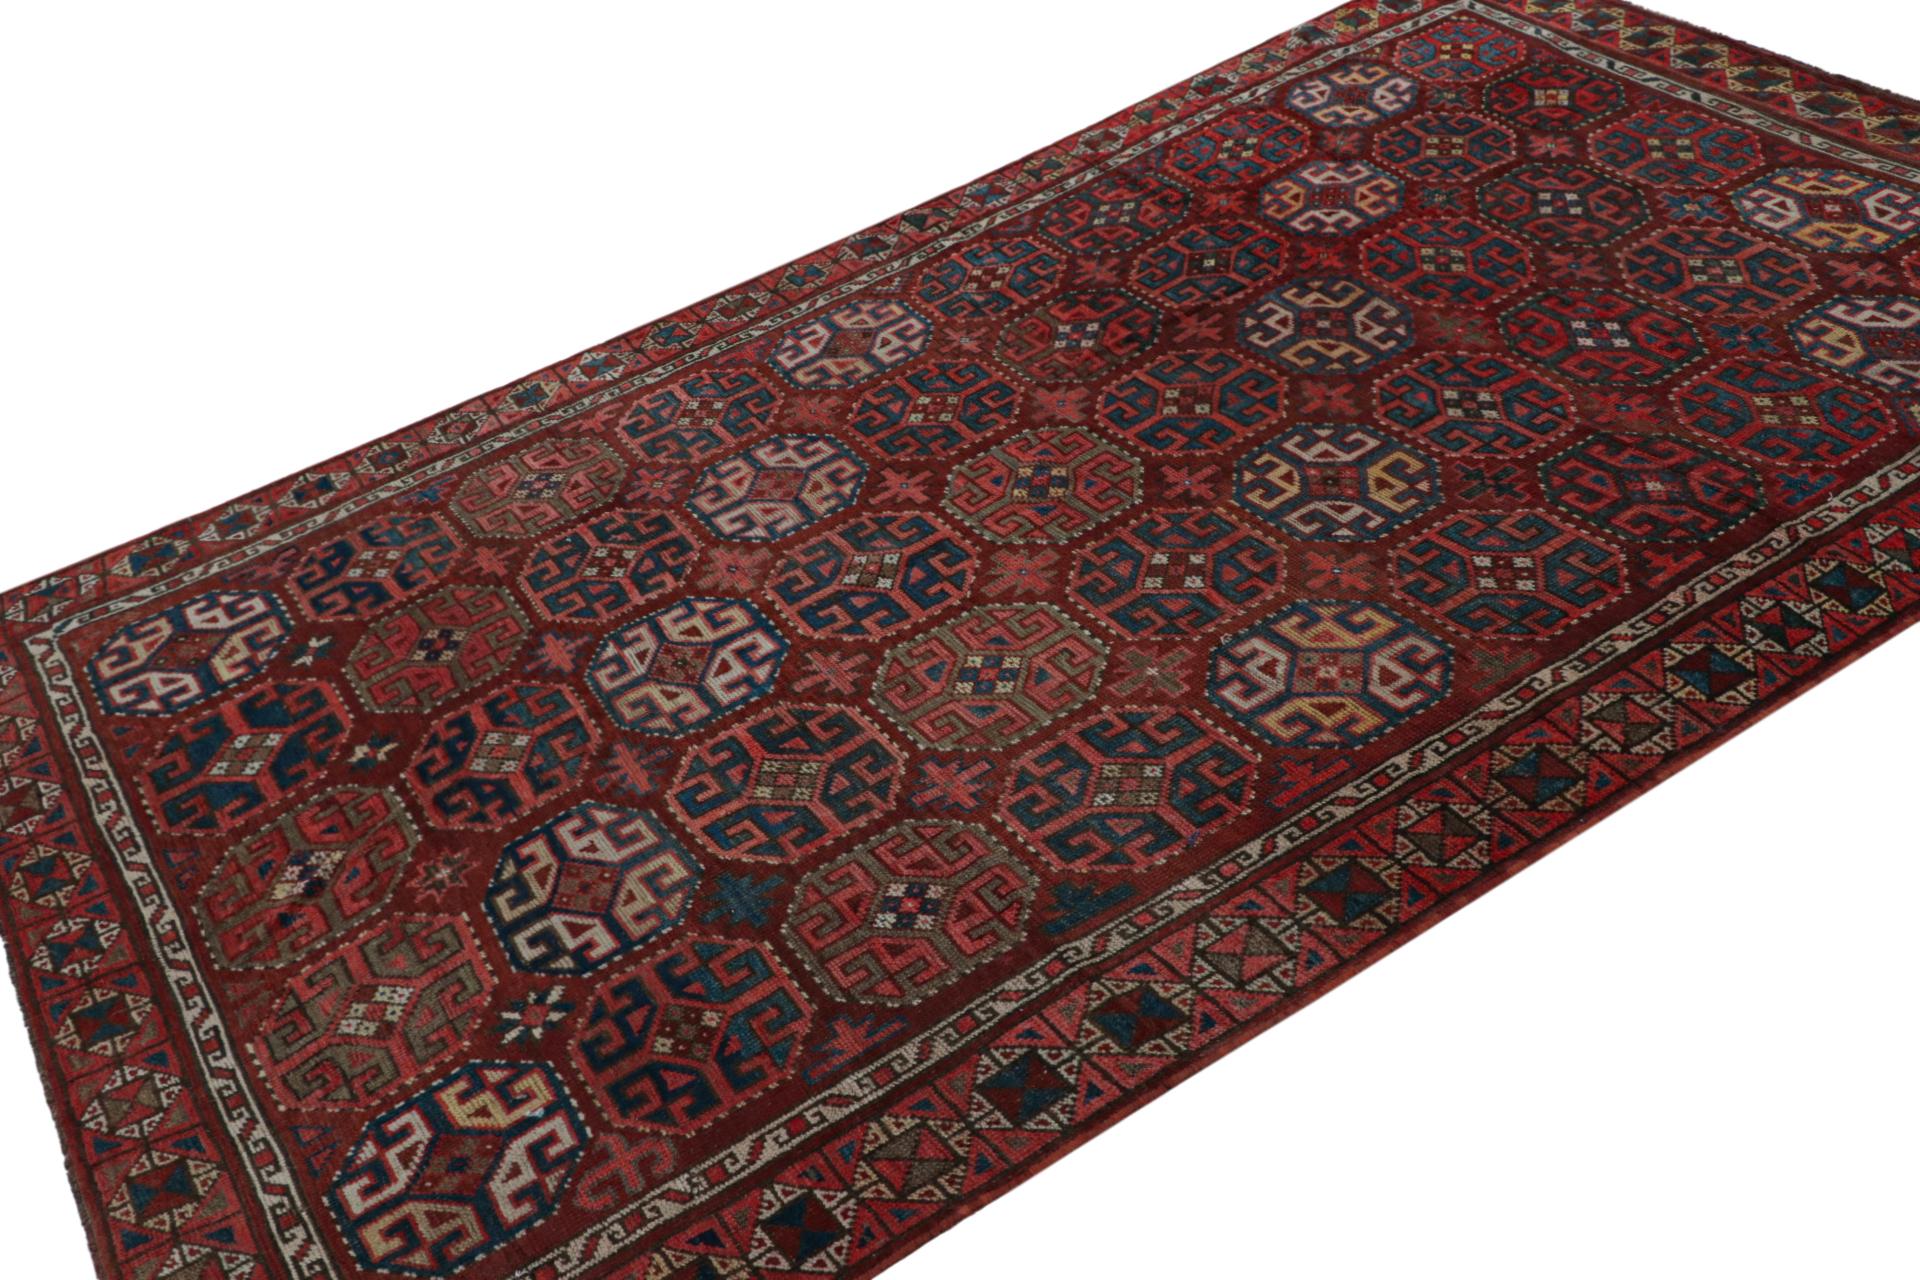 Dieser handgeknüpfte türkische Teppich im Format 6x9 zeigt traditionelle Muster, die von Teppichen aus Khotan und Samarkand inspiriert sind. 

Über das Design: 

Kenner werden dieses Design bewundern, das sich durch ein traditionelles Design